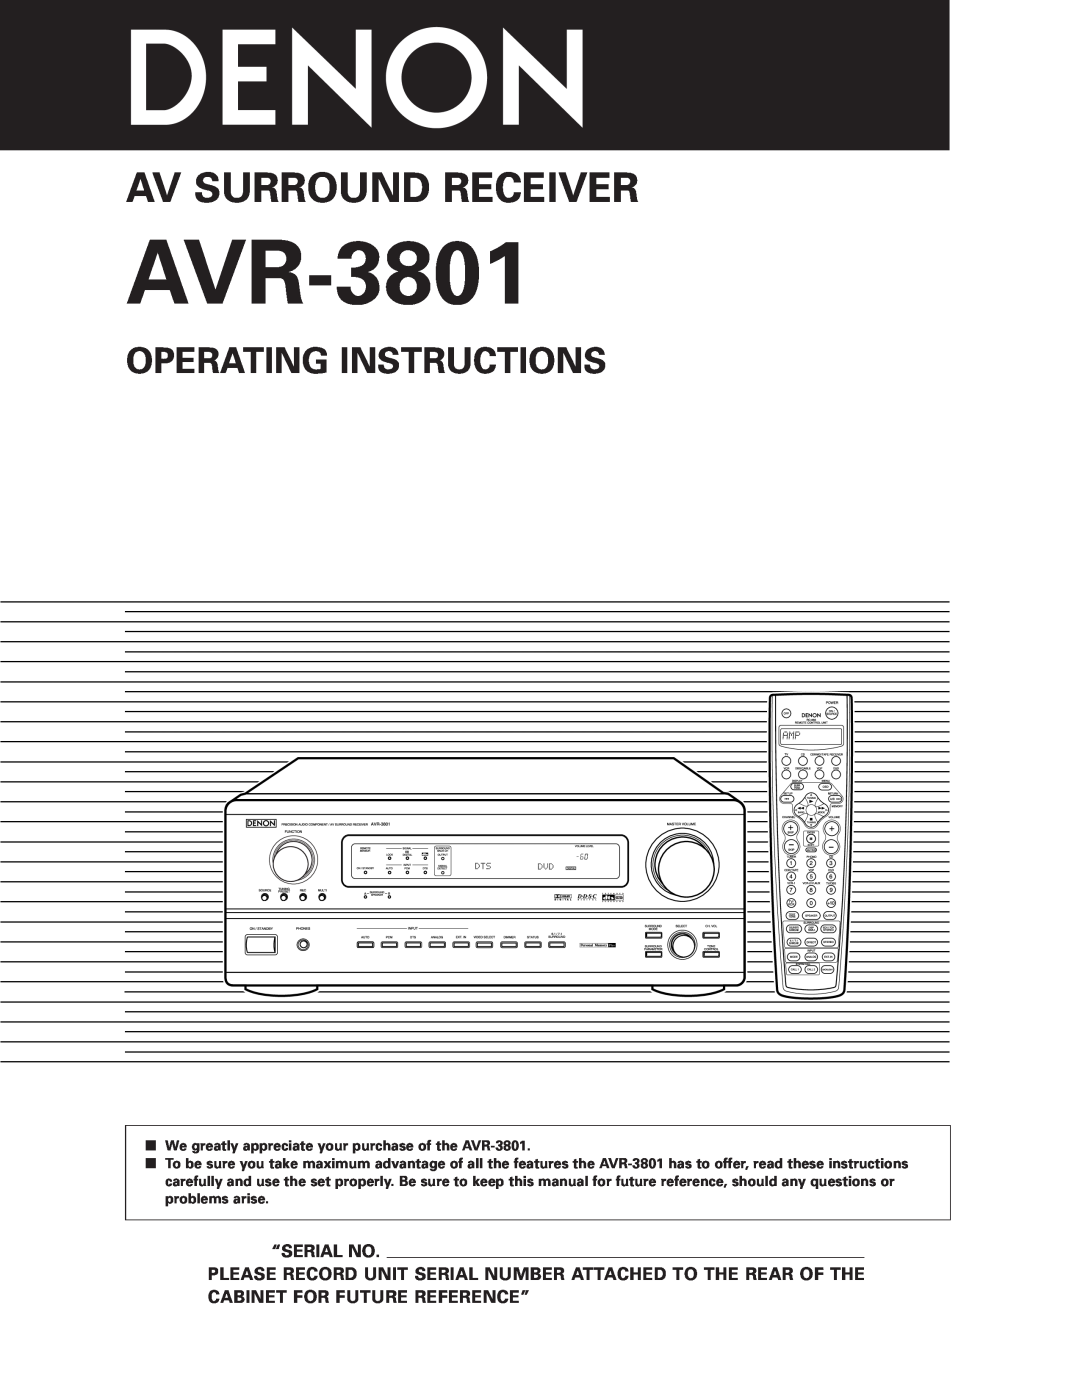 Denon AVR-3801 manual Operating Instructions, “Serial No, Av Surround Receiver 